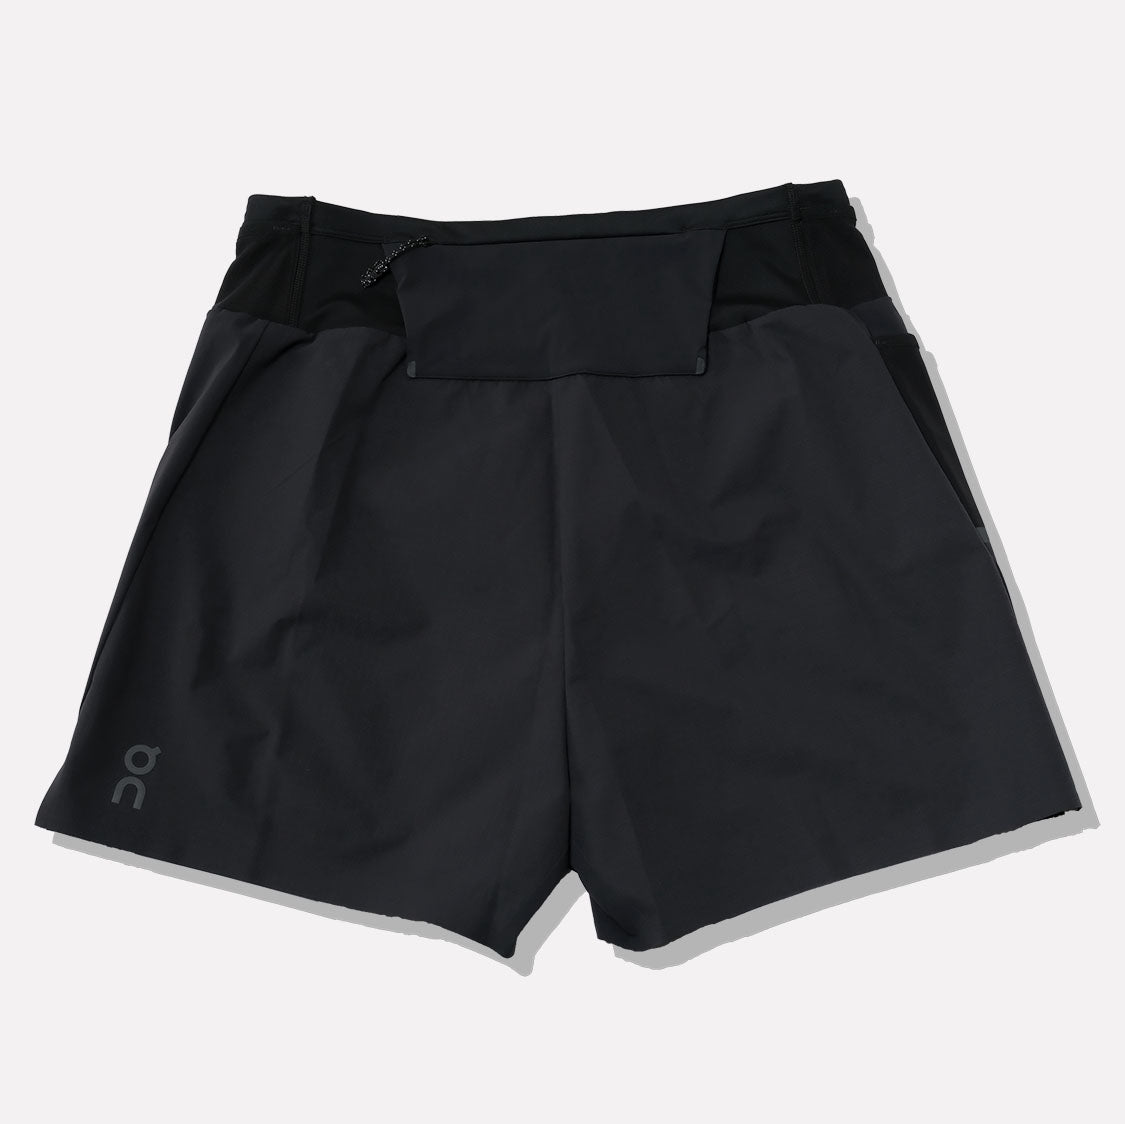 オン ウルトラショーツ on ultra shorts メンズ Mサイズ 黒